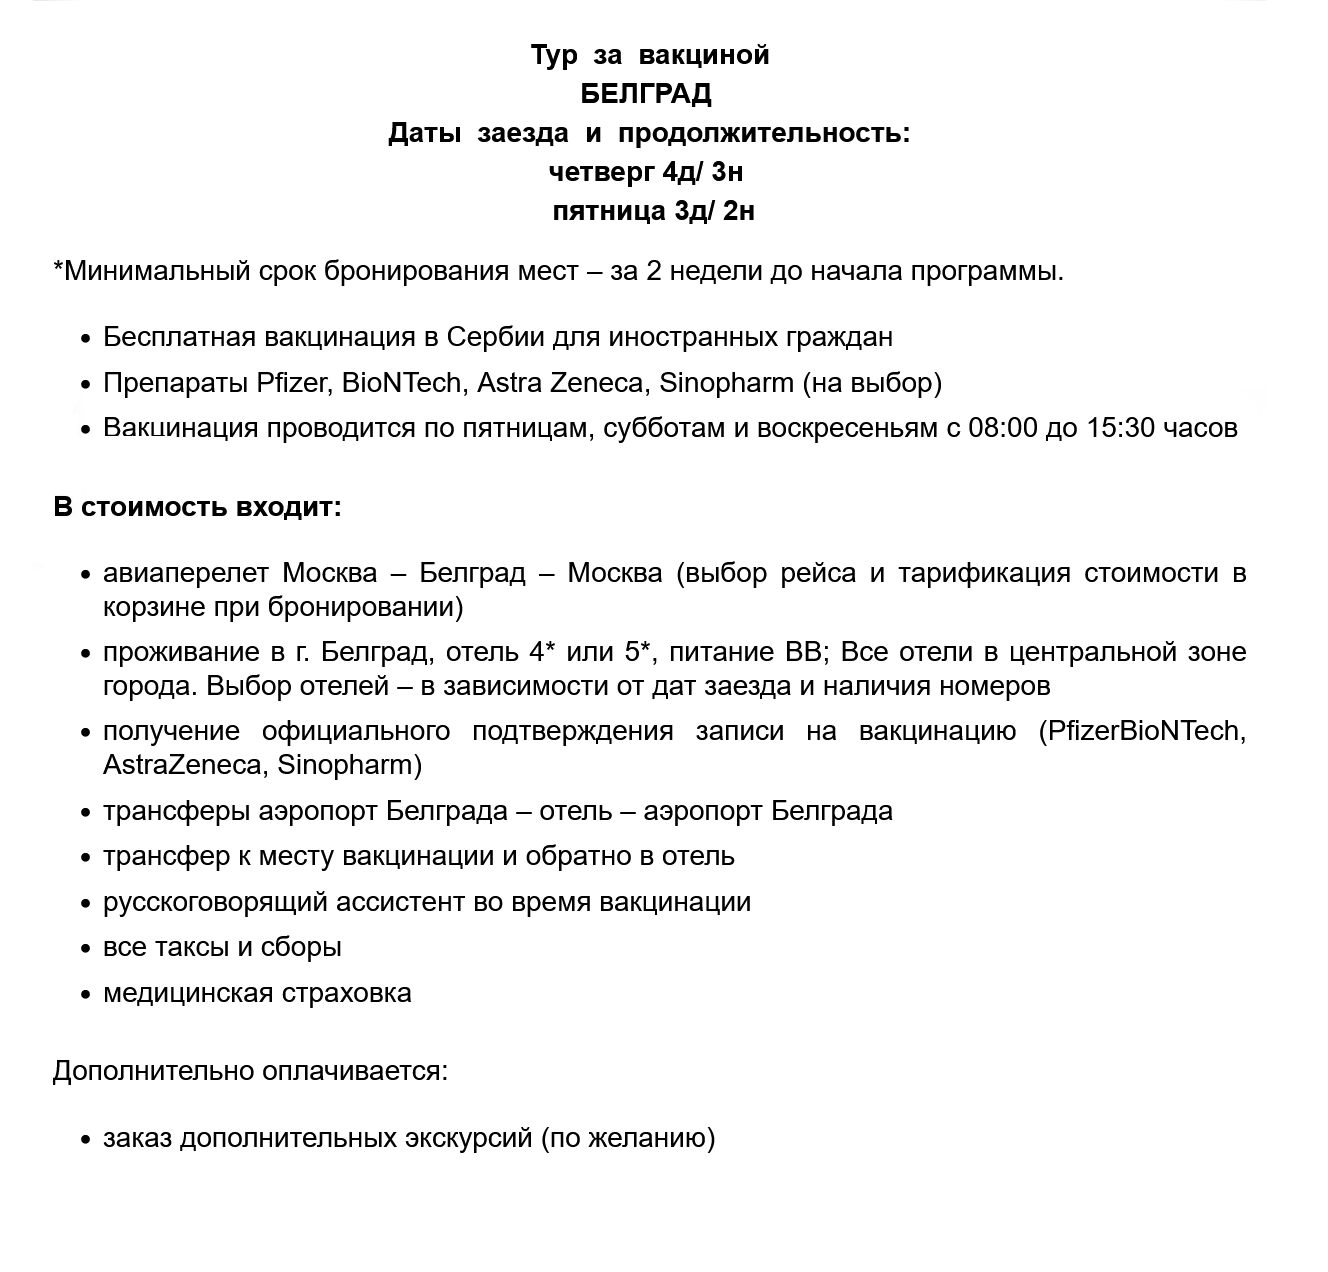 Так выглядит описание прививочного тура в Сербию на сайте агентства «Русский экспресс»